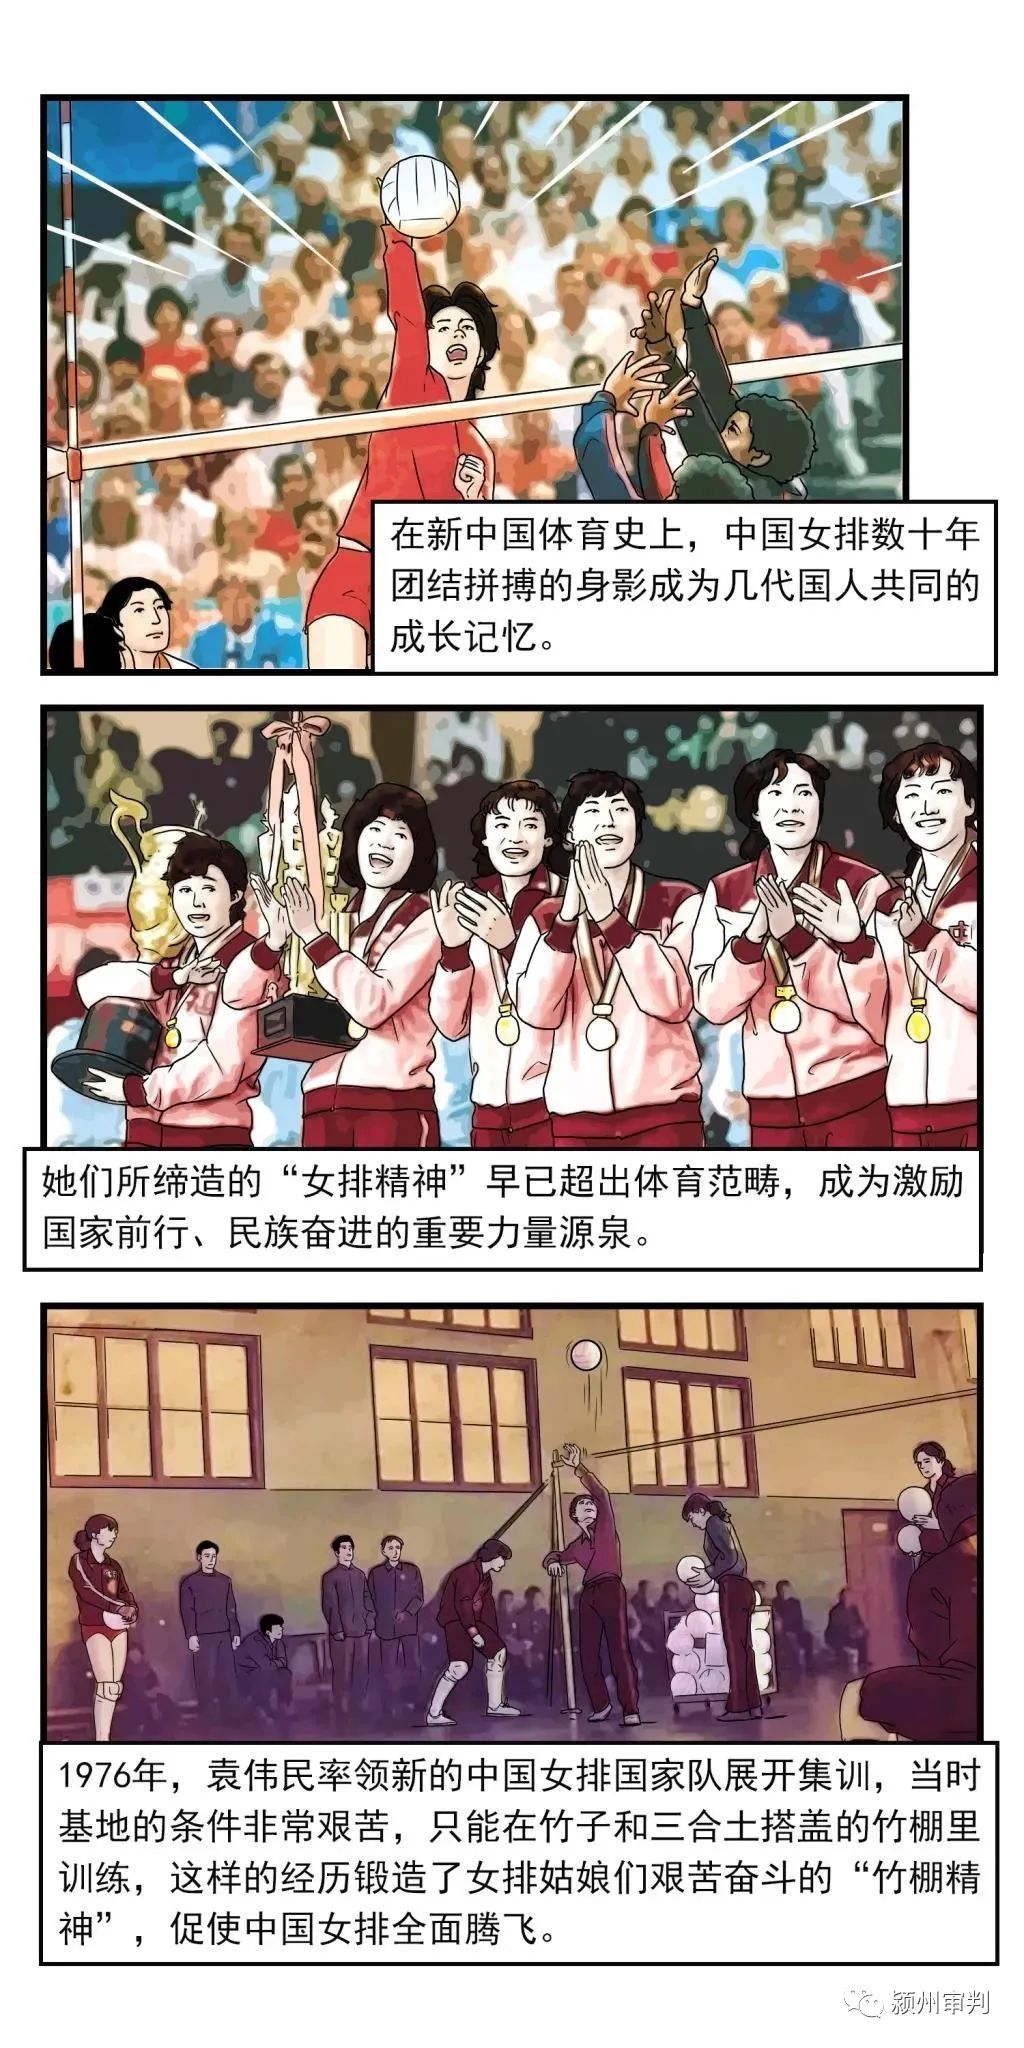 【四史讲堂⒀】漫画新中国史:女排精神